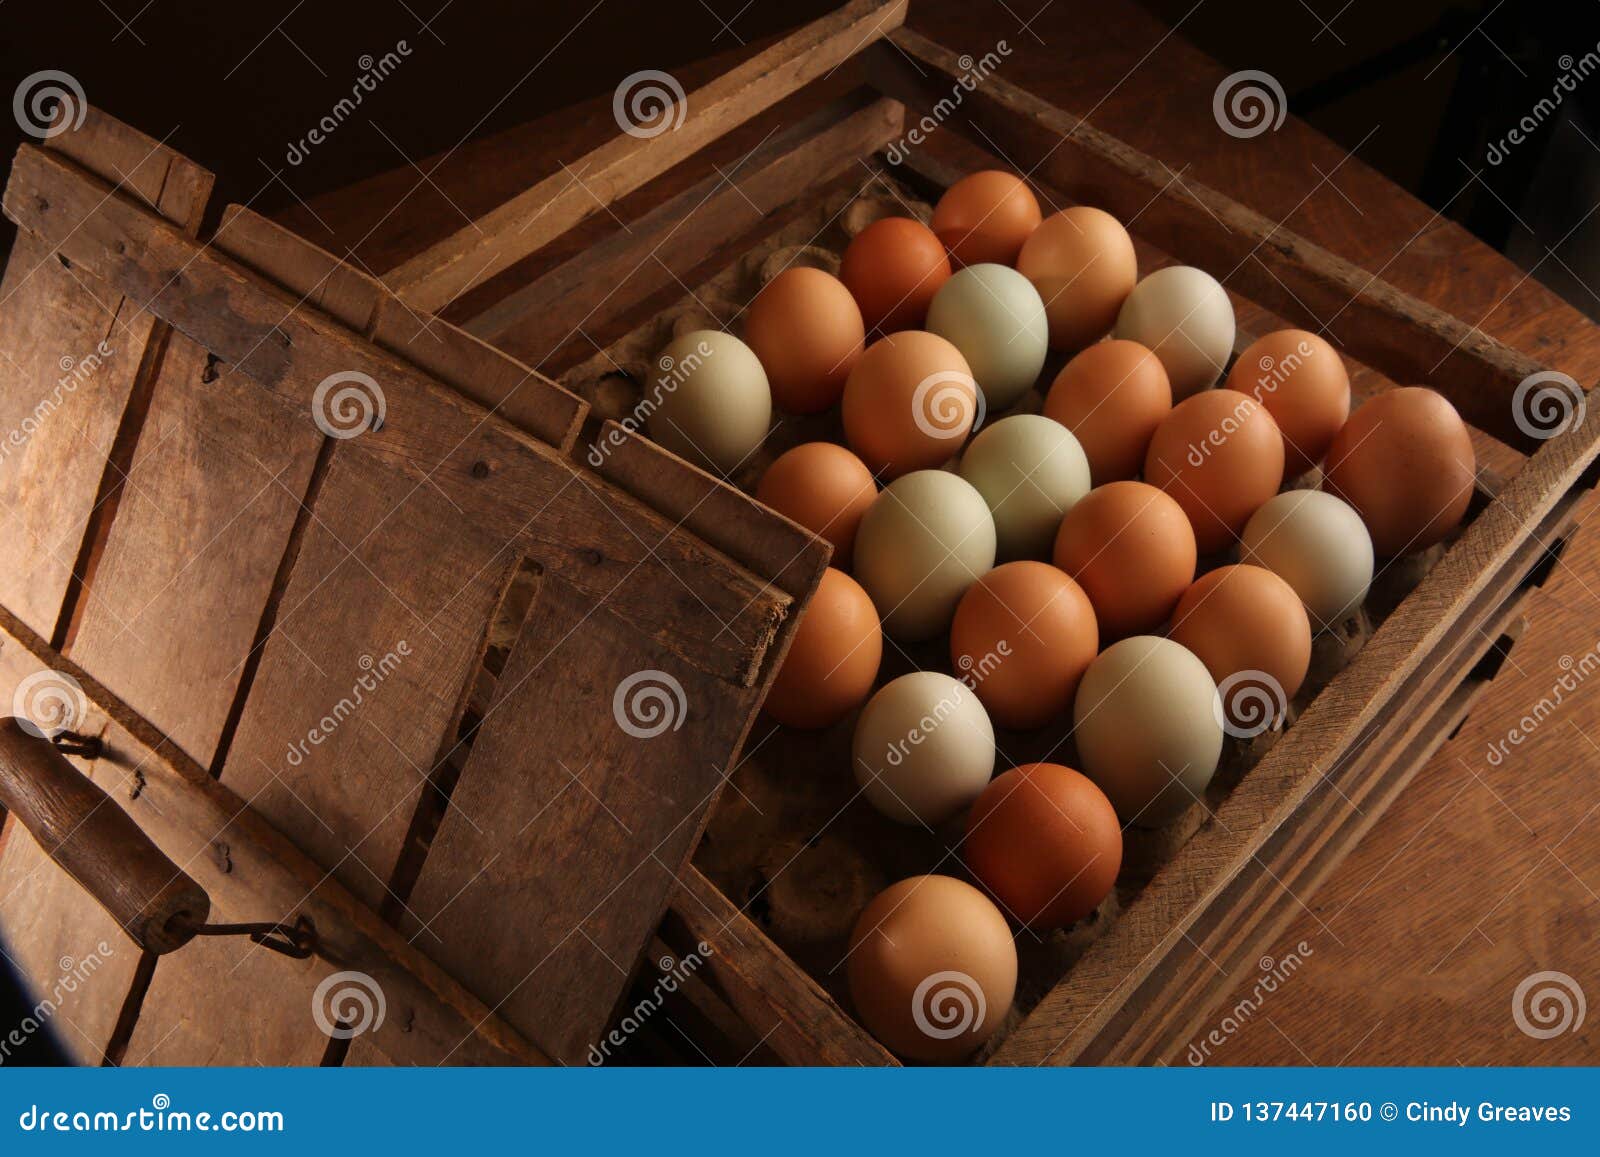 https://thumbs.dreamstime.com/z/wood-crate-eggs-farm-fresh-brown-green-table-morning-breakfast-easter-egger-hen-egg-plymouth-rock-dark-light-antique-137447160.jpg